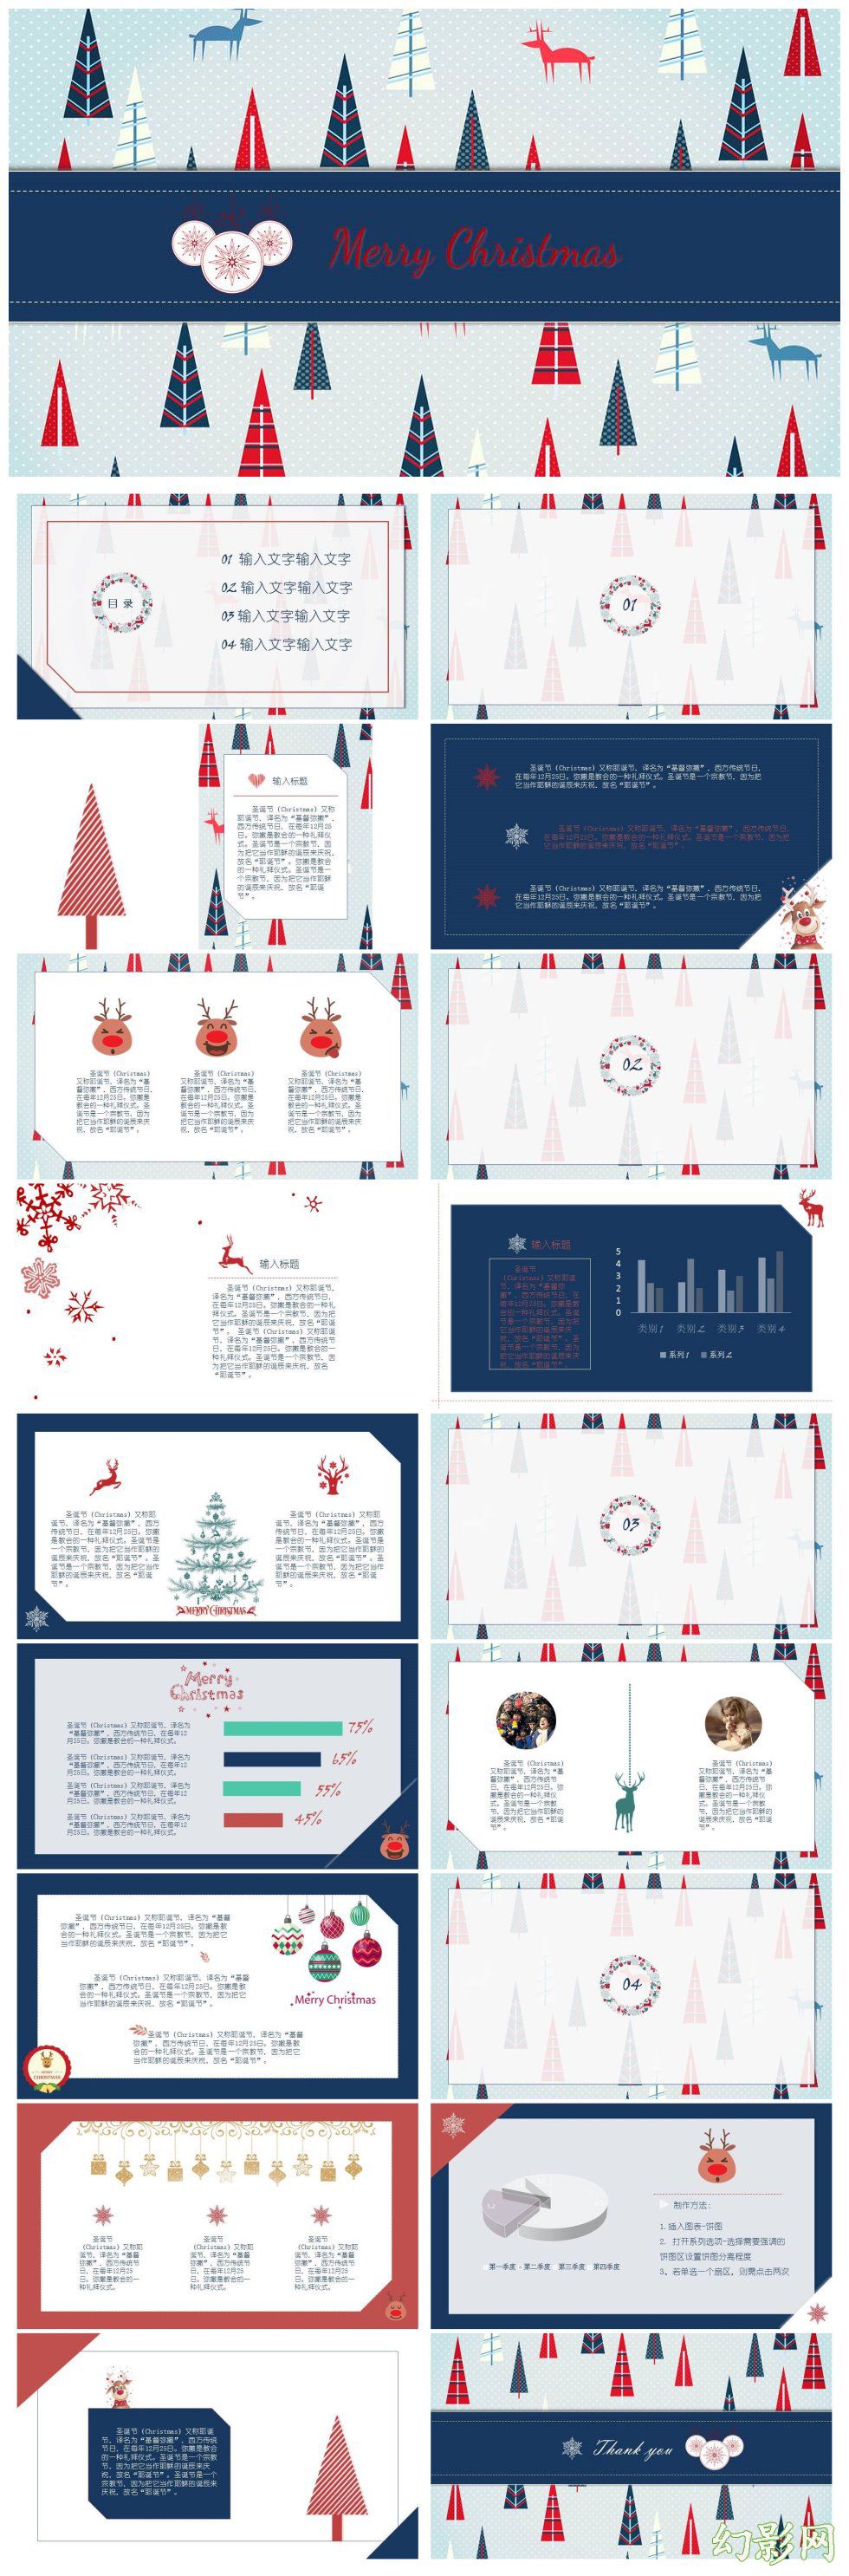 红蓝撞色卡通风圣诞PPT 圣诞营销计划 圣诞介绍 清新可爱